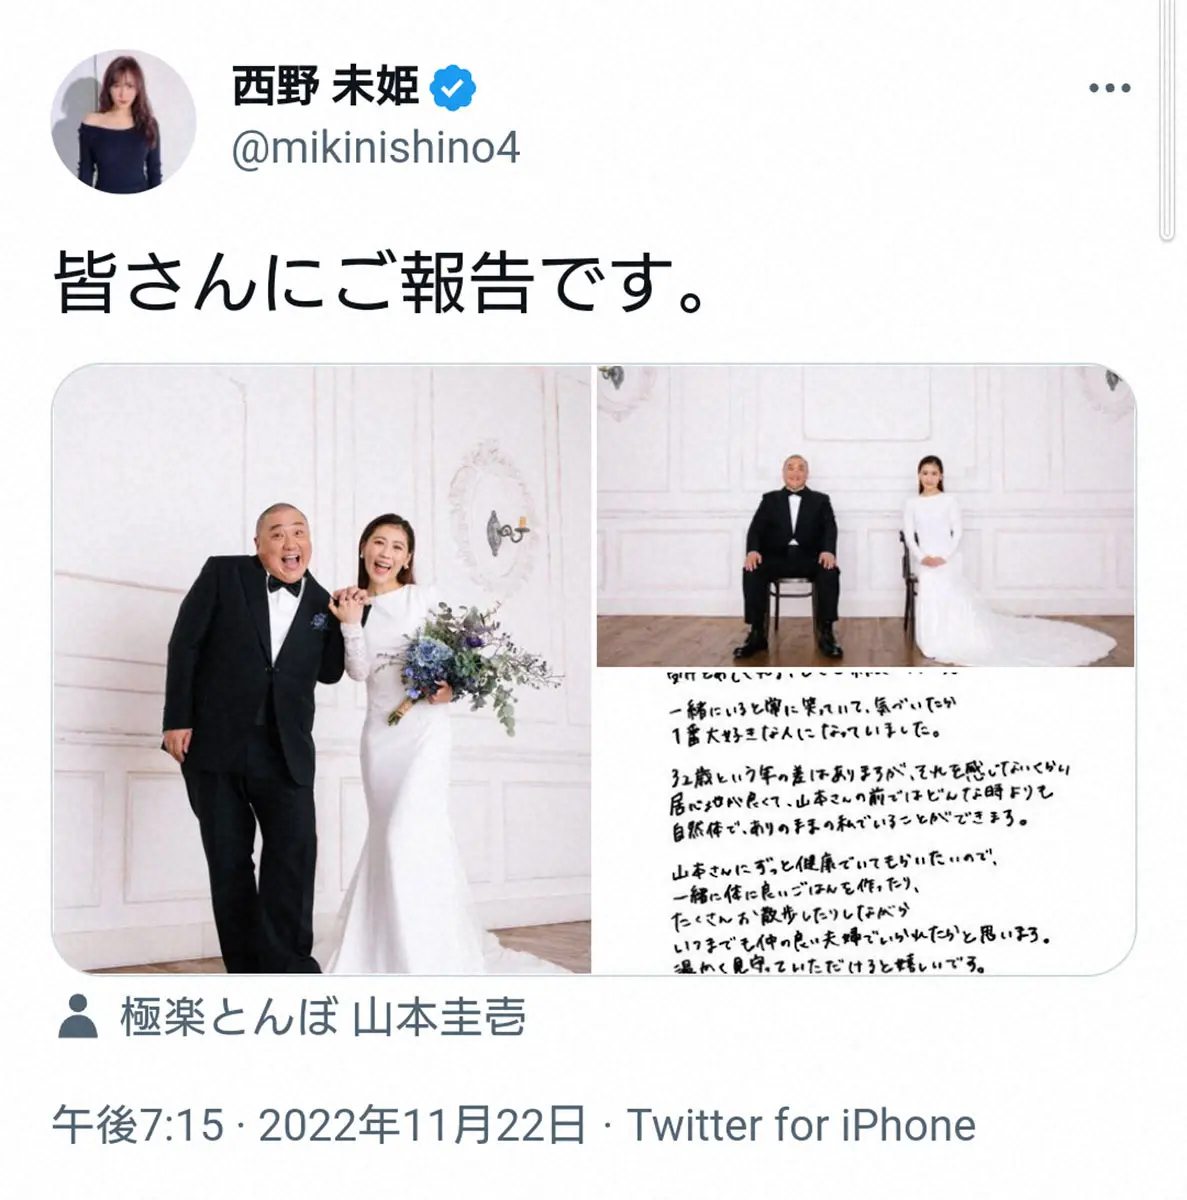 極楽とんぼ・山本圭壱との結婚を報告した西野未姫のツイッター